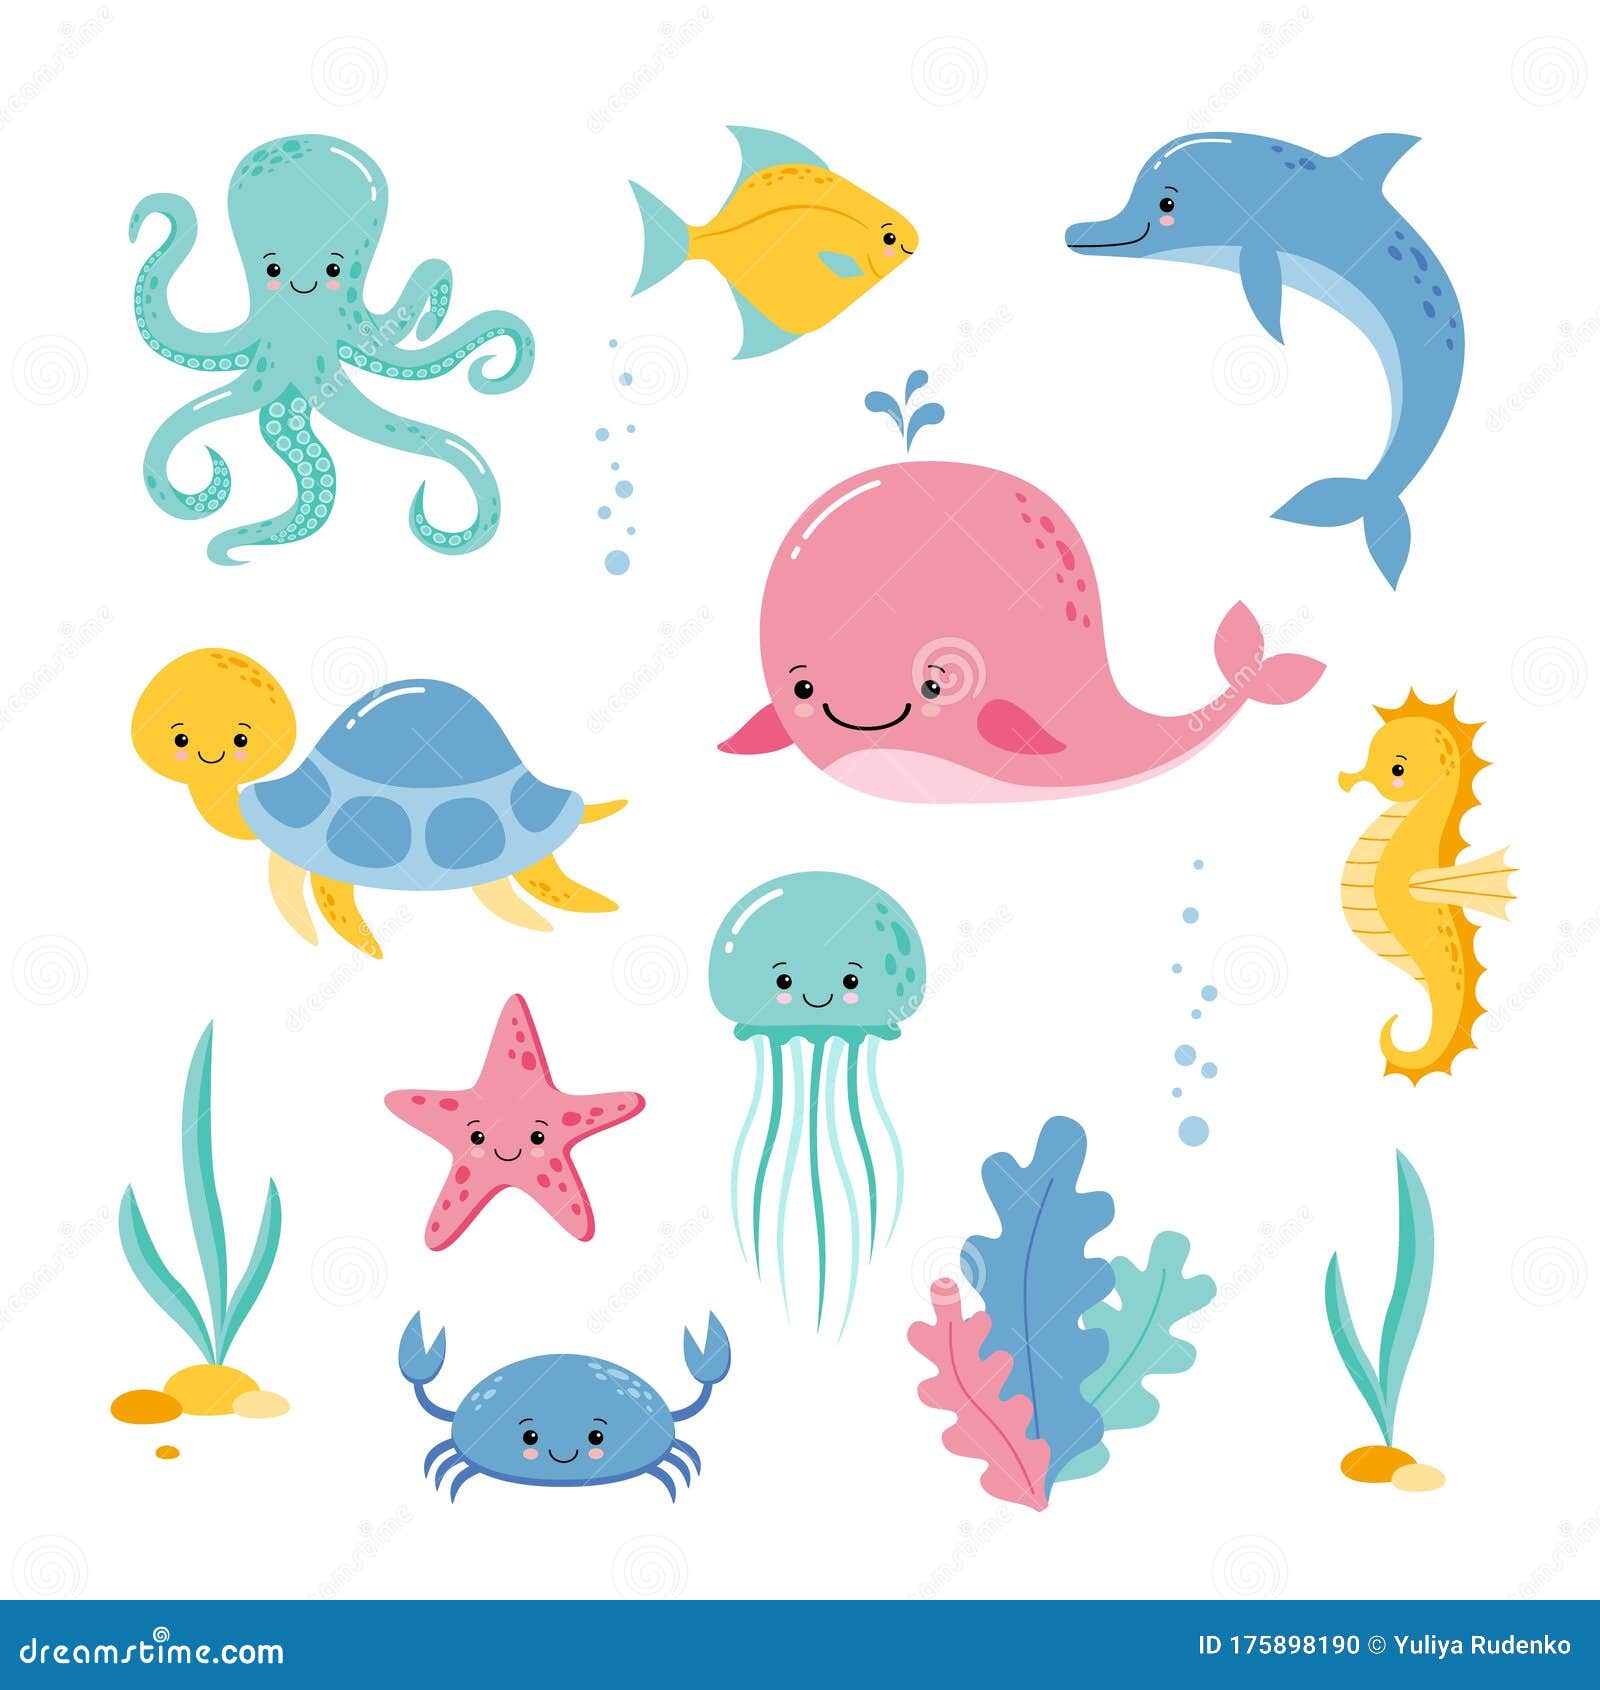 Kawaii Sea Creatures Stock Illustrations – 190 Kawaii Sea Creatures Stock  Illustrations, Vectors & Clipart - Dreamstime